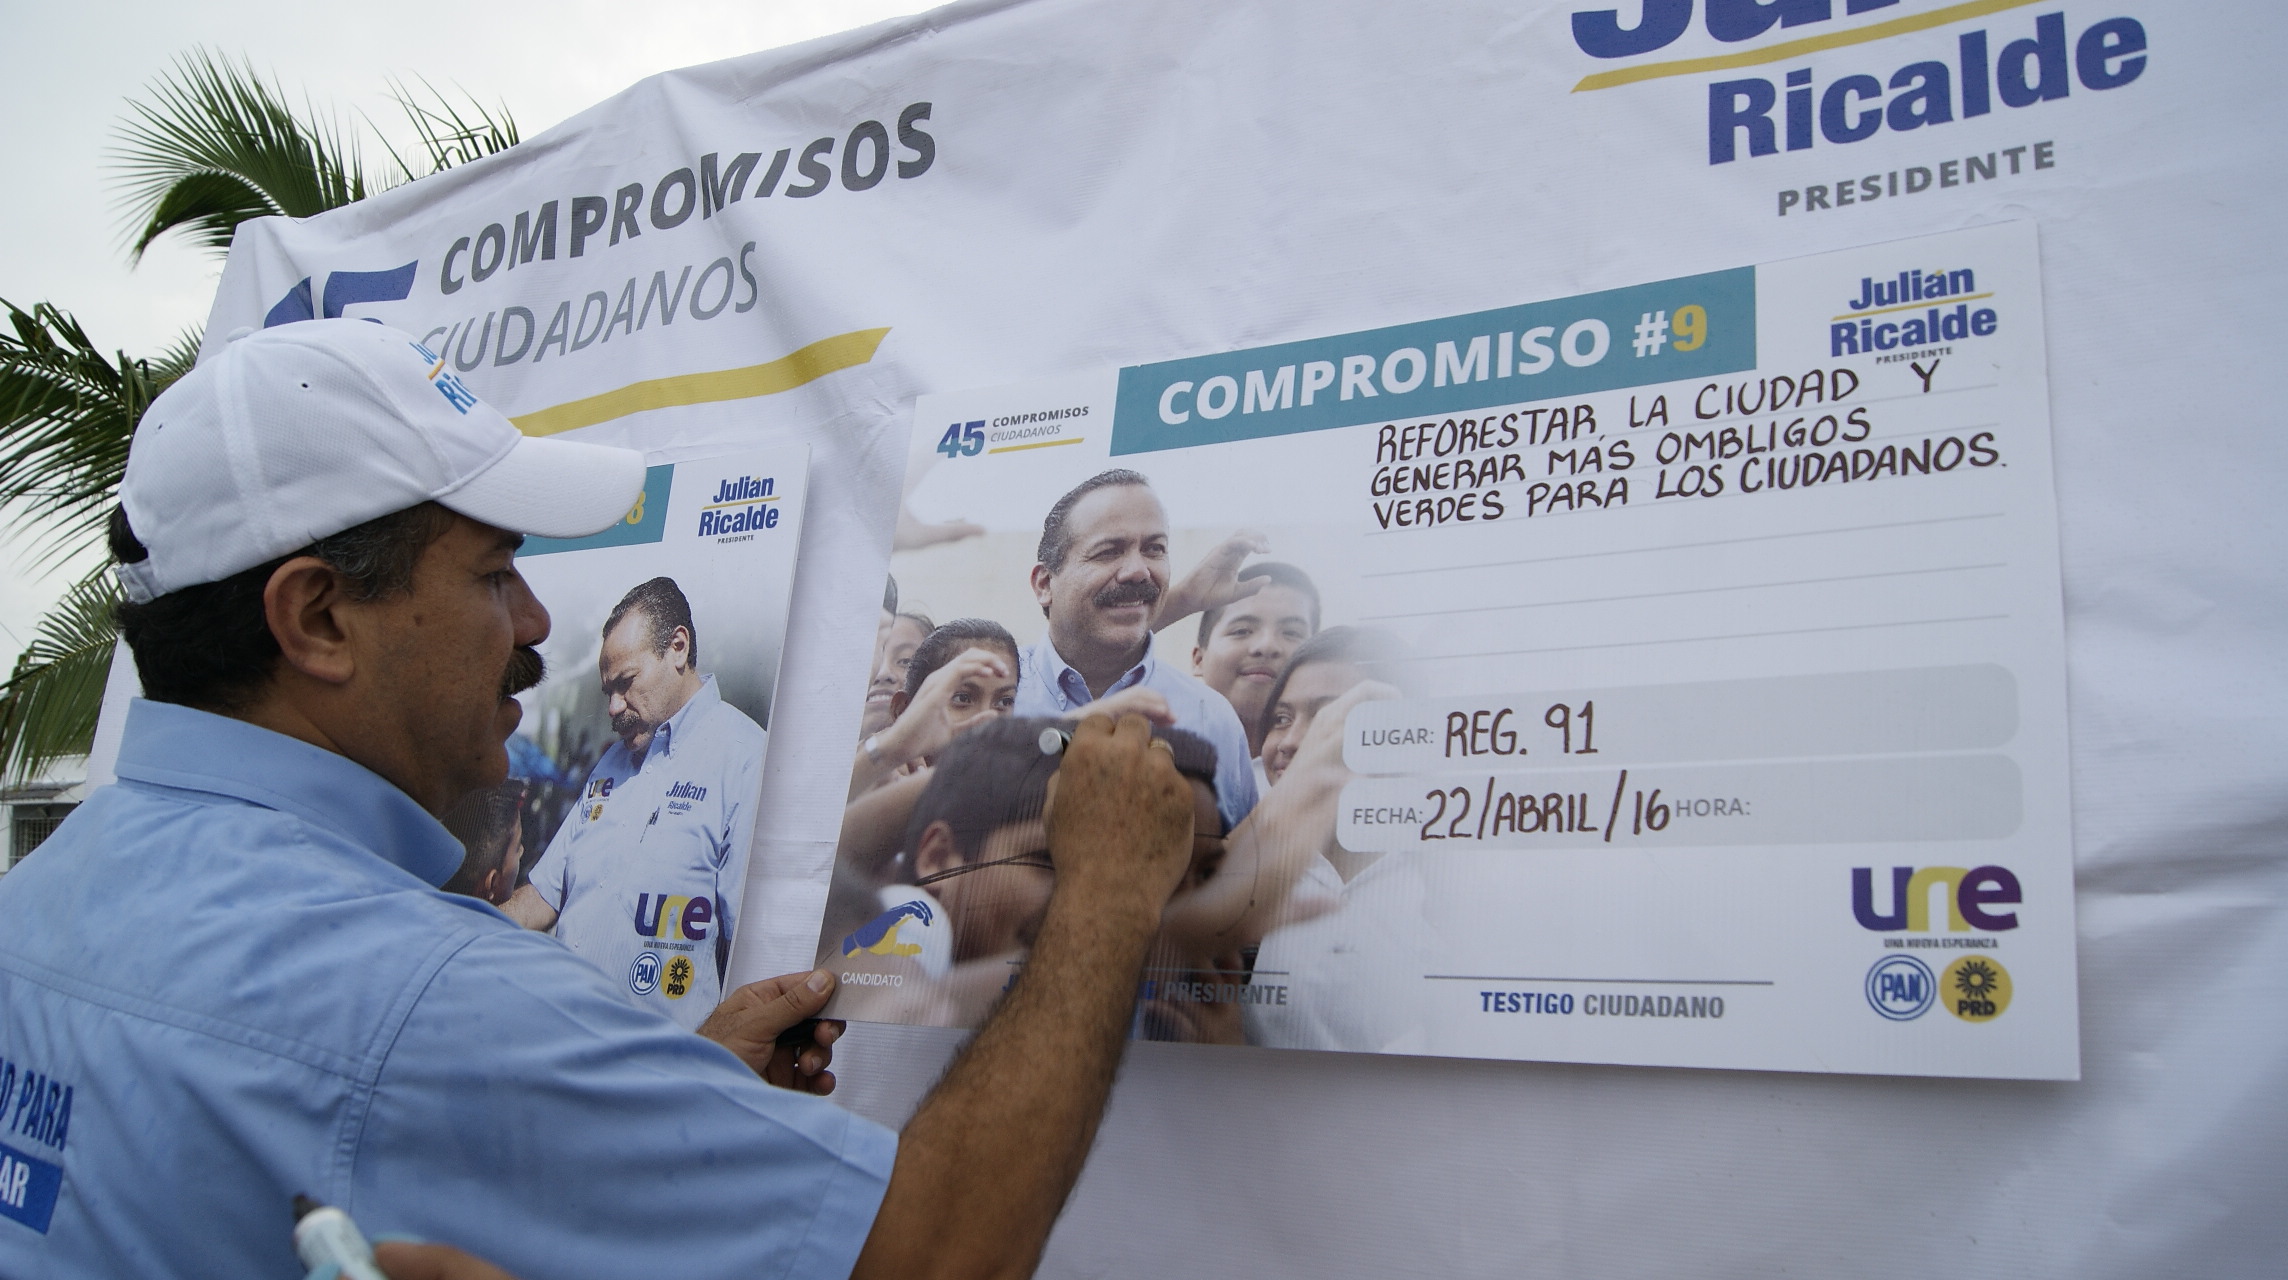 Julián Ricalde recorrió las calles de la Región 91, donde firmó compromisos en presencia de los vecinos, que le reconocieron las obras de pavimentación hechas en su administración.